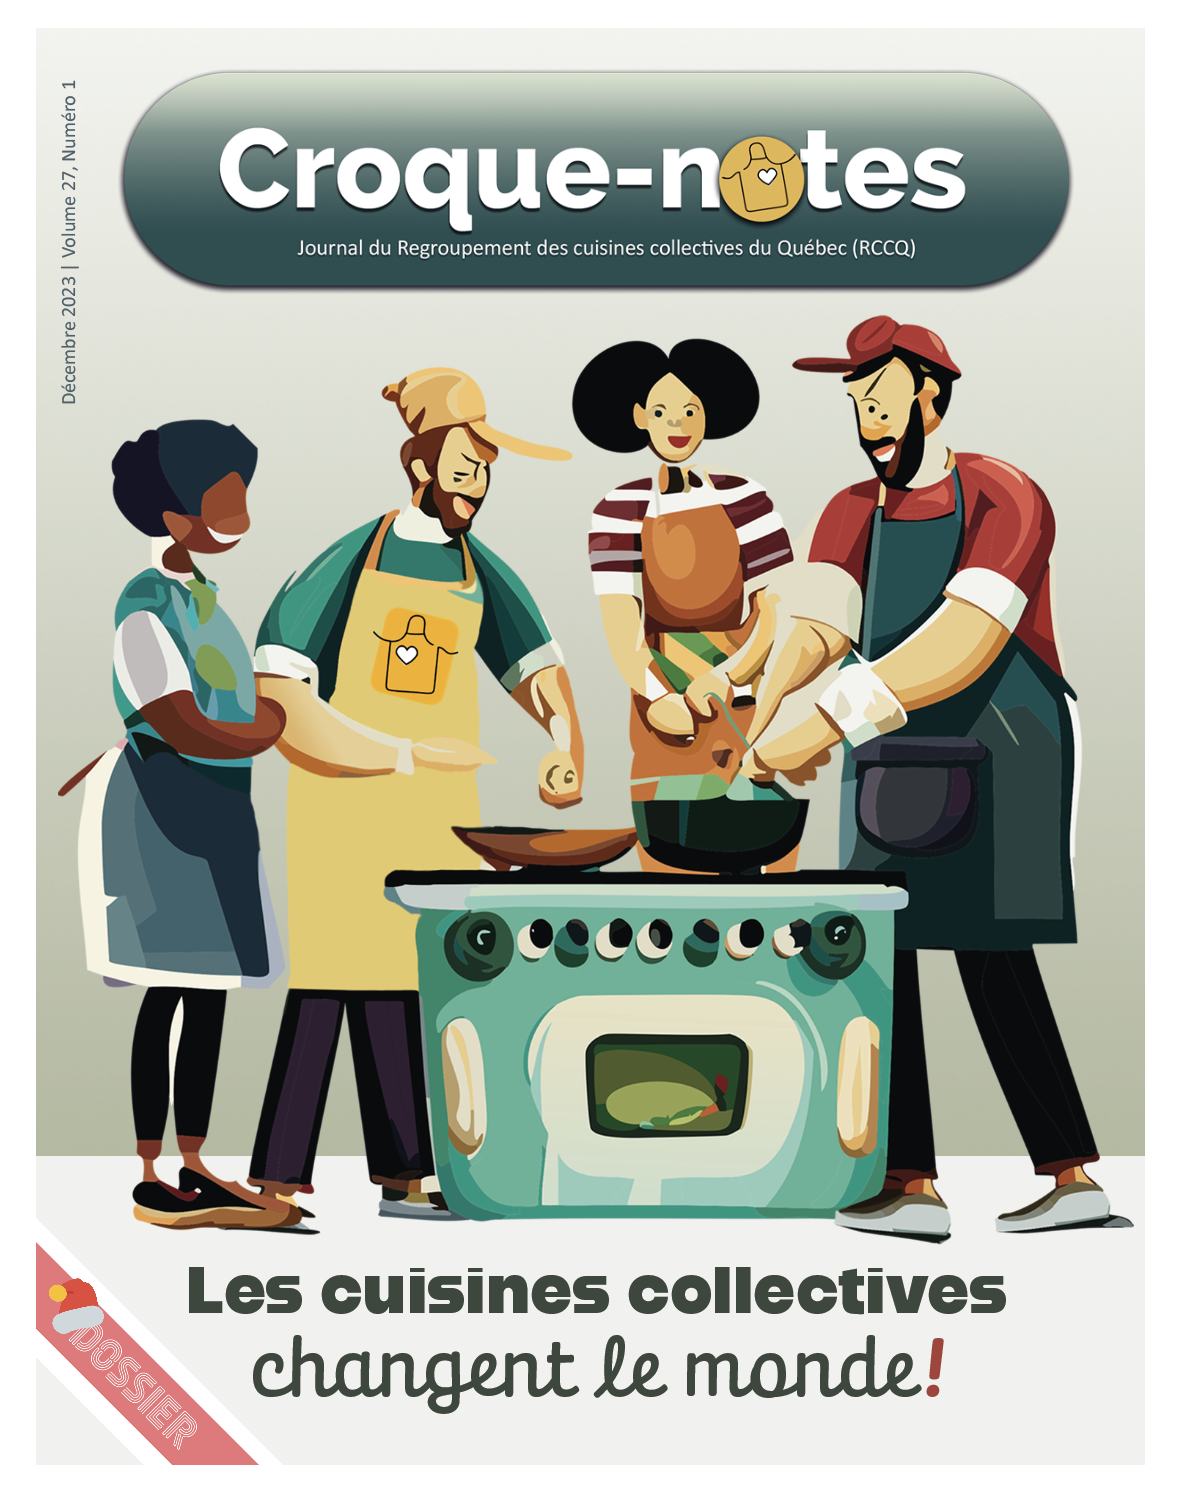 Affiche promotionnelle sur les cuisines collectives - Regroupement